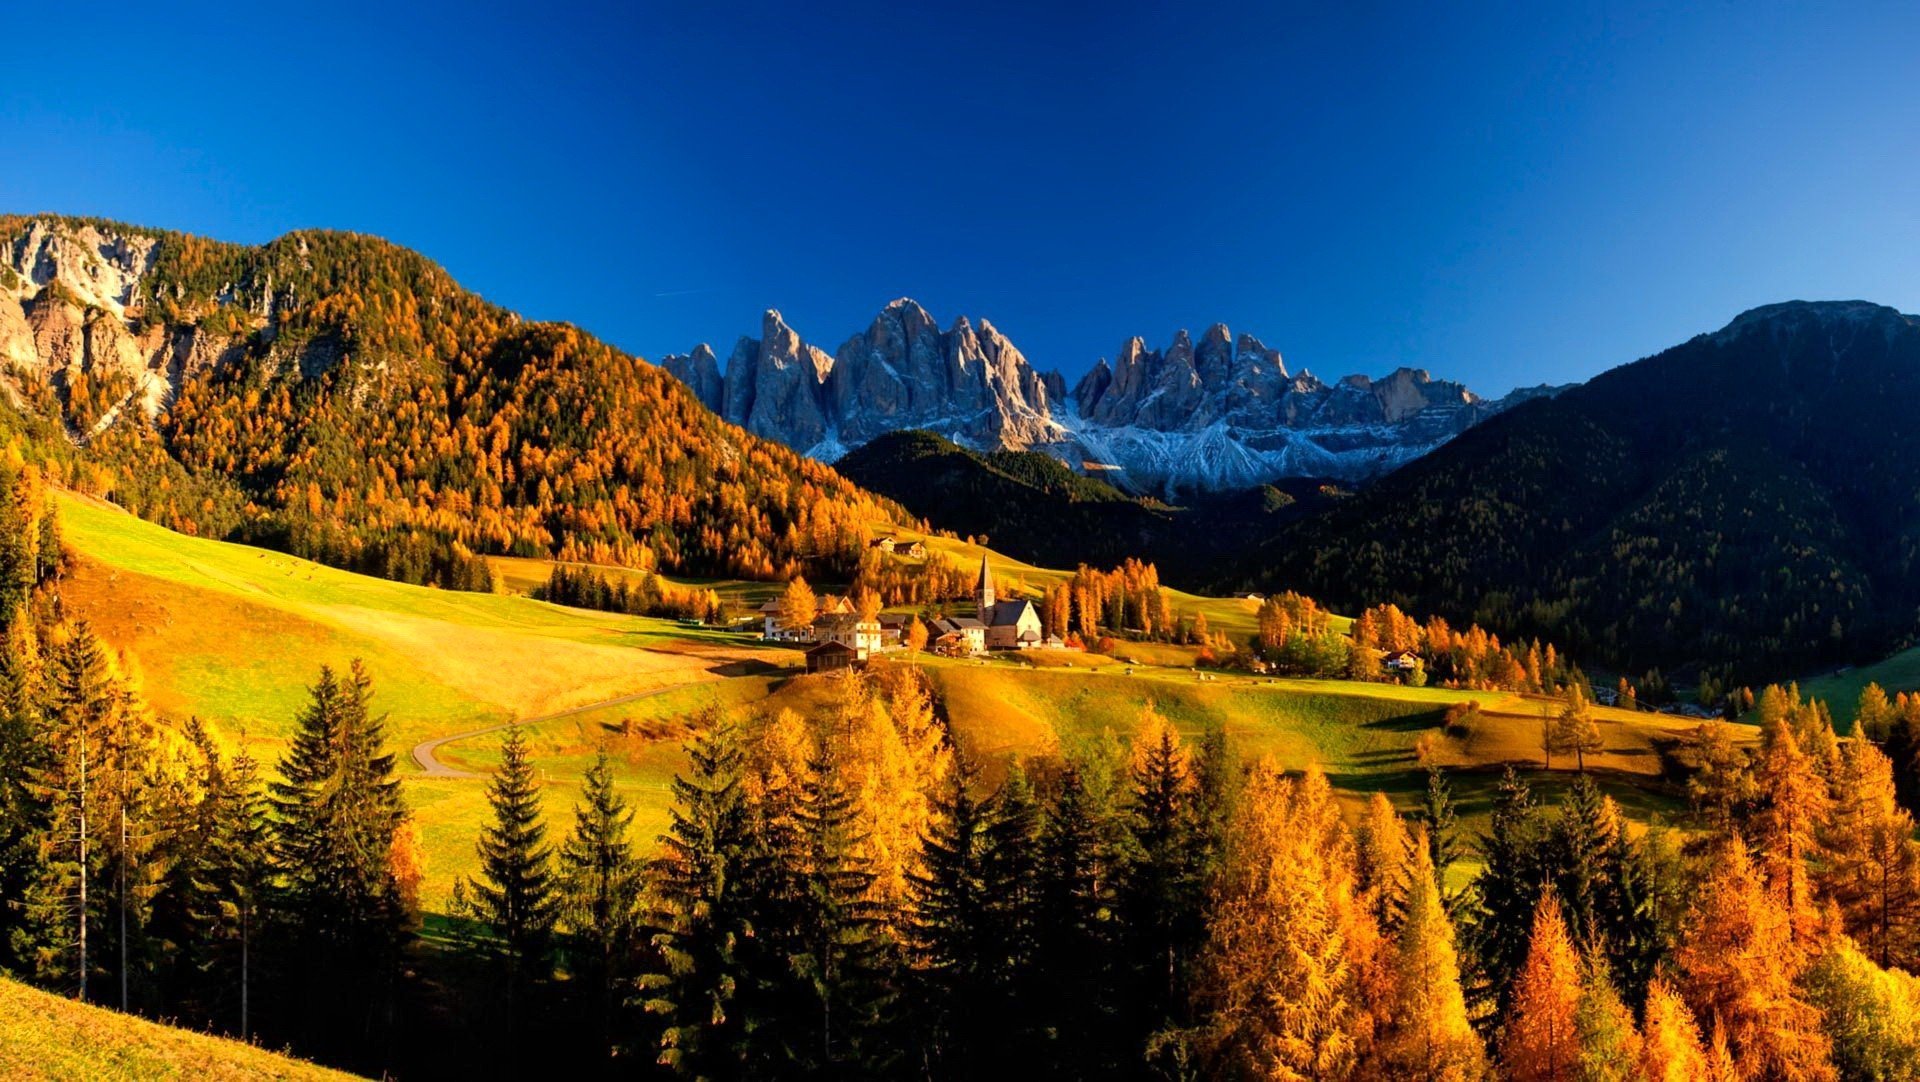 Обои на 10 4. Доломитовые Альпы Италия. Доломитовые Альпы осень Италия. Осень в горах. Горы осенью.